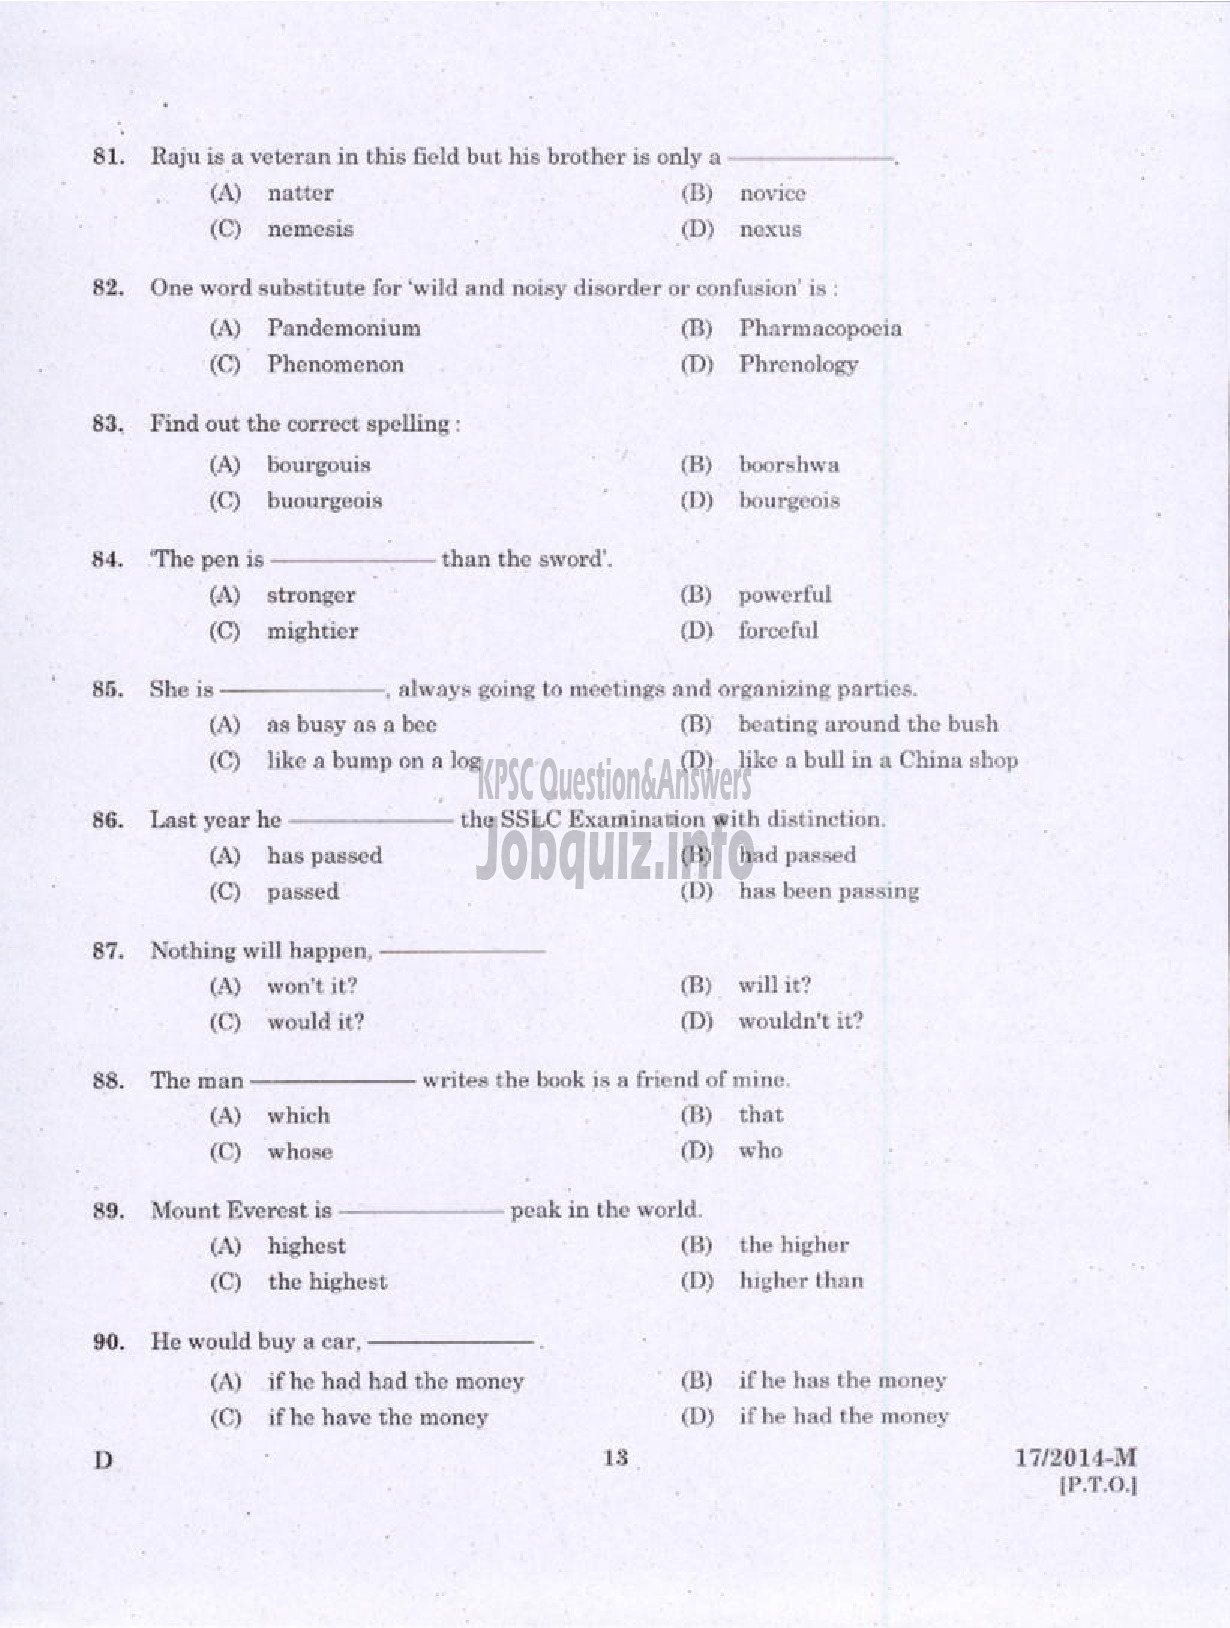 Kerala PSC Question Paper - LDC VARIOUS 2014 PALAKKAD ( Malayalam ) -11